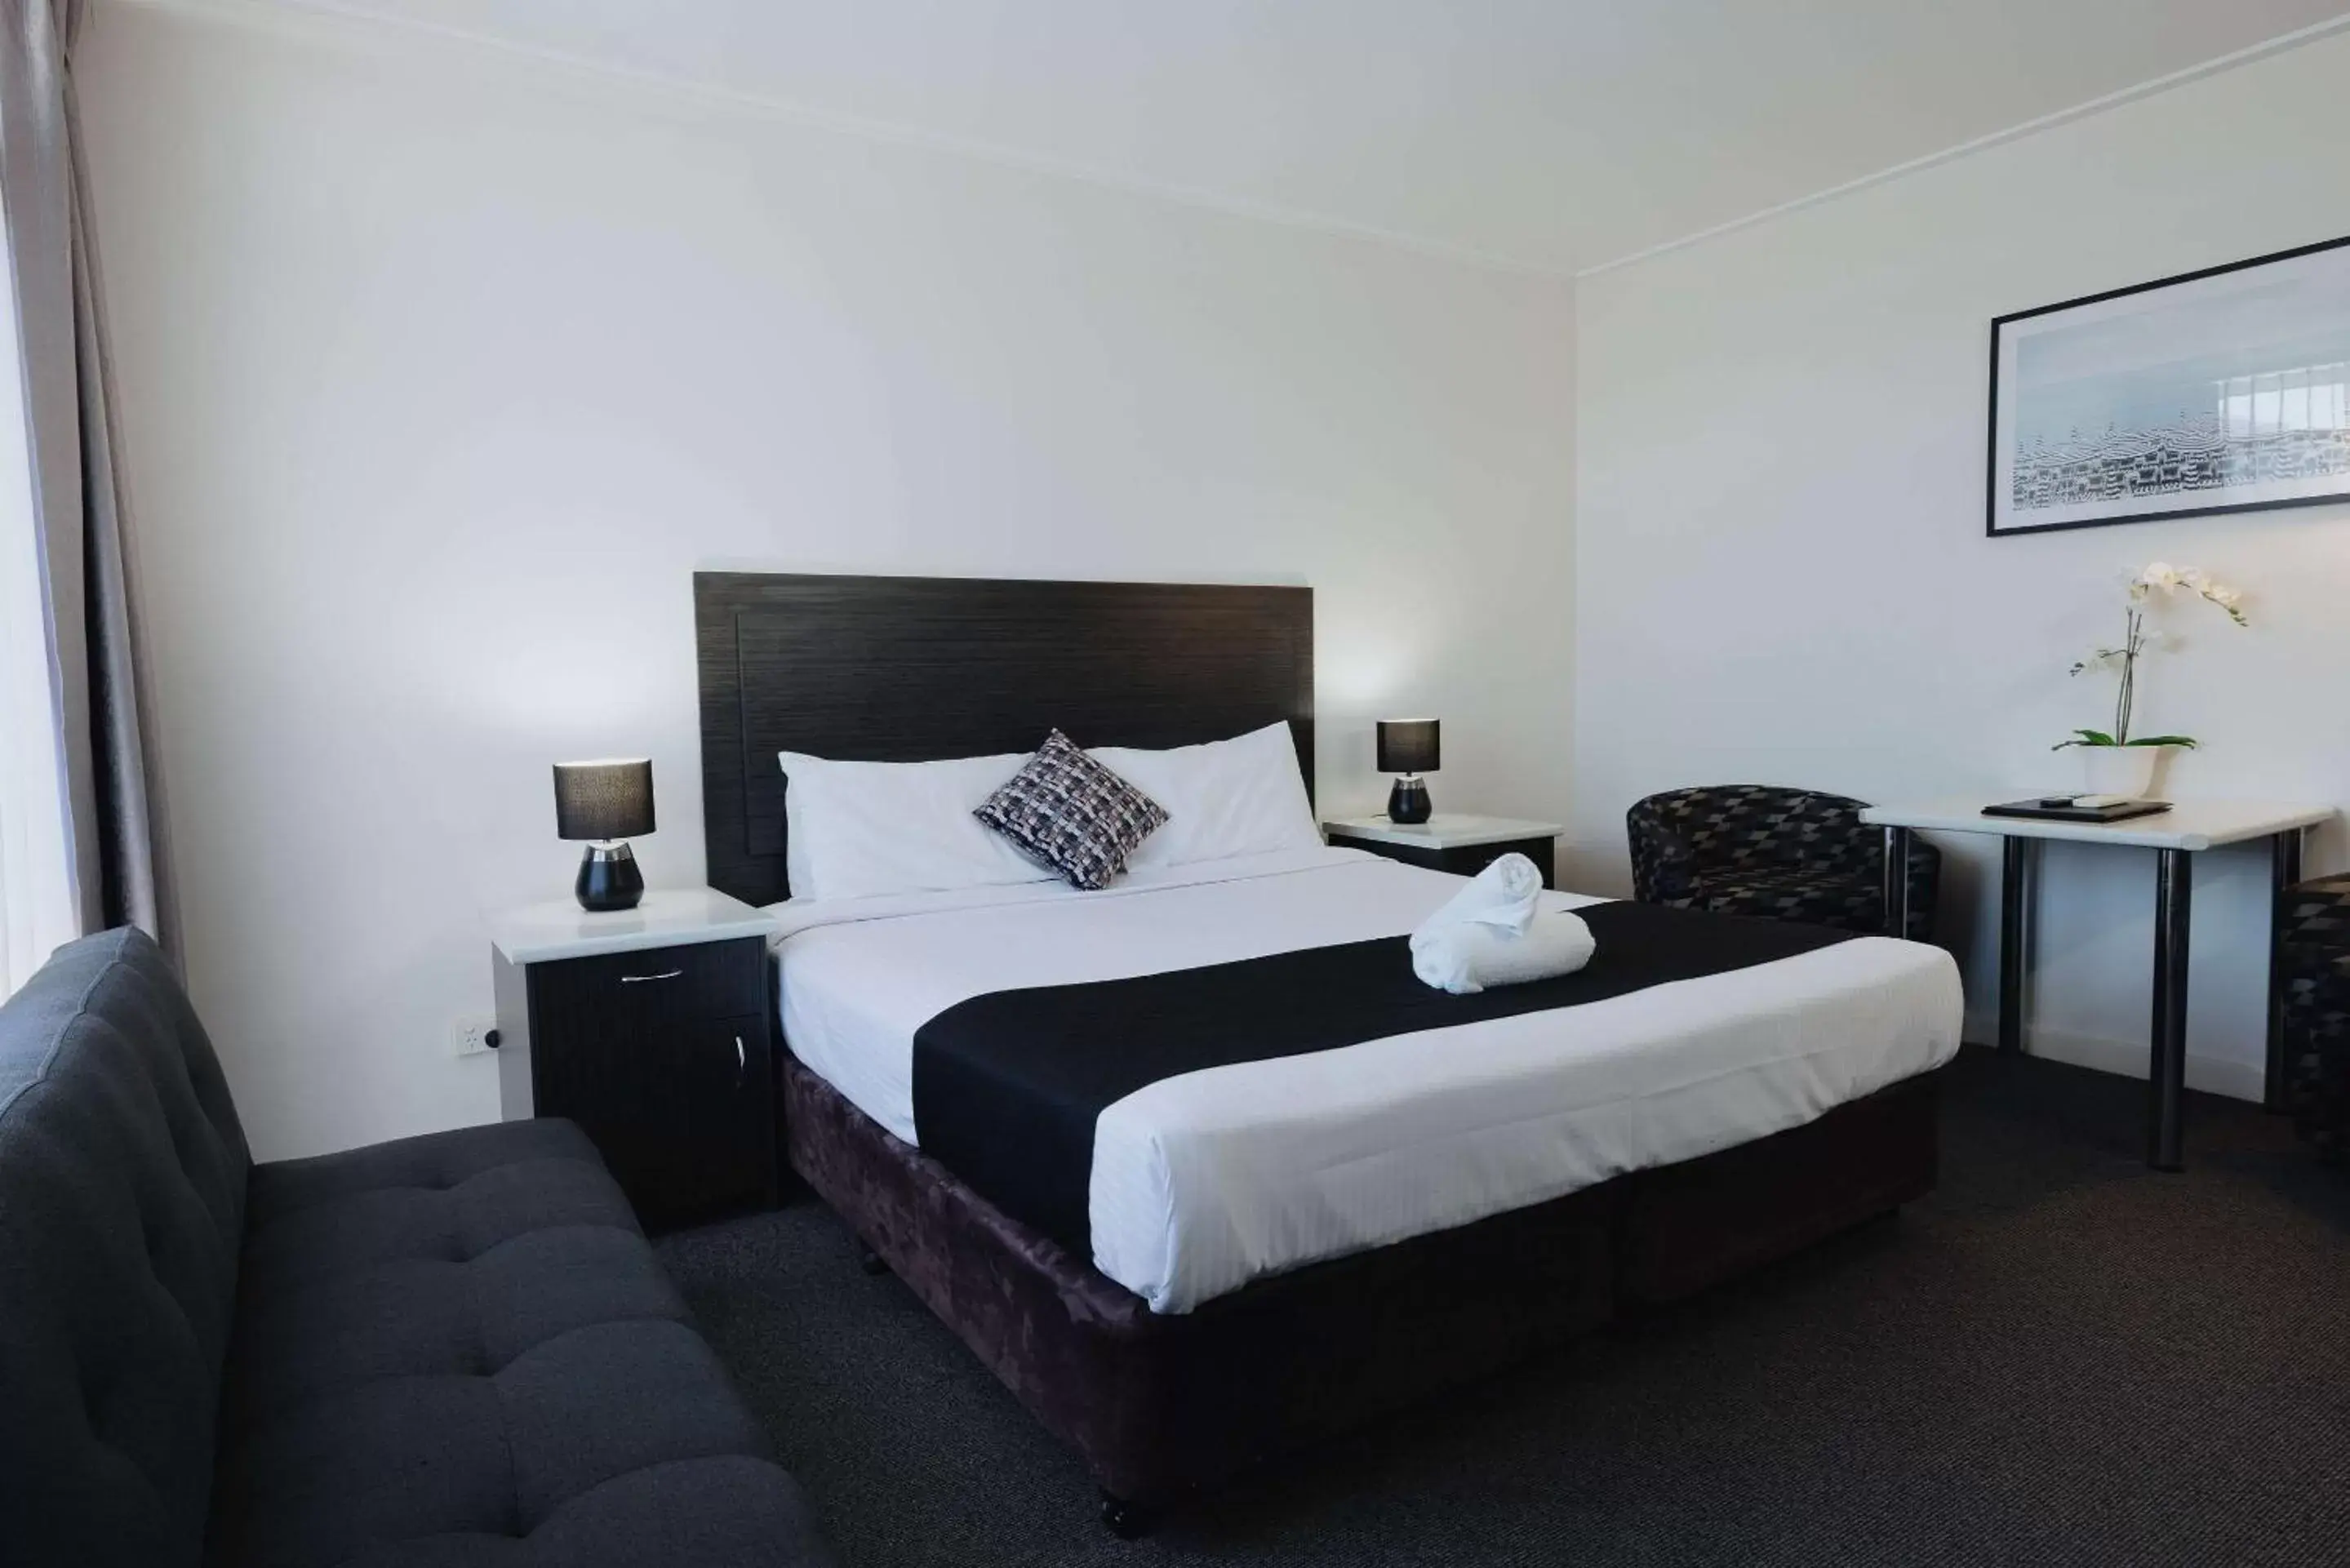 Bedroom, Bed in Comfort Inn Traralgon